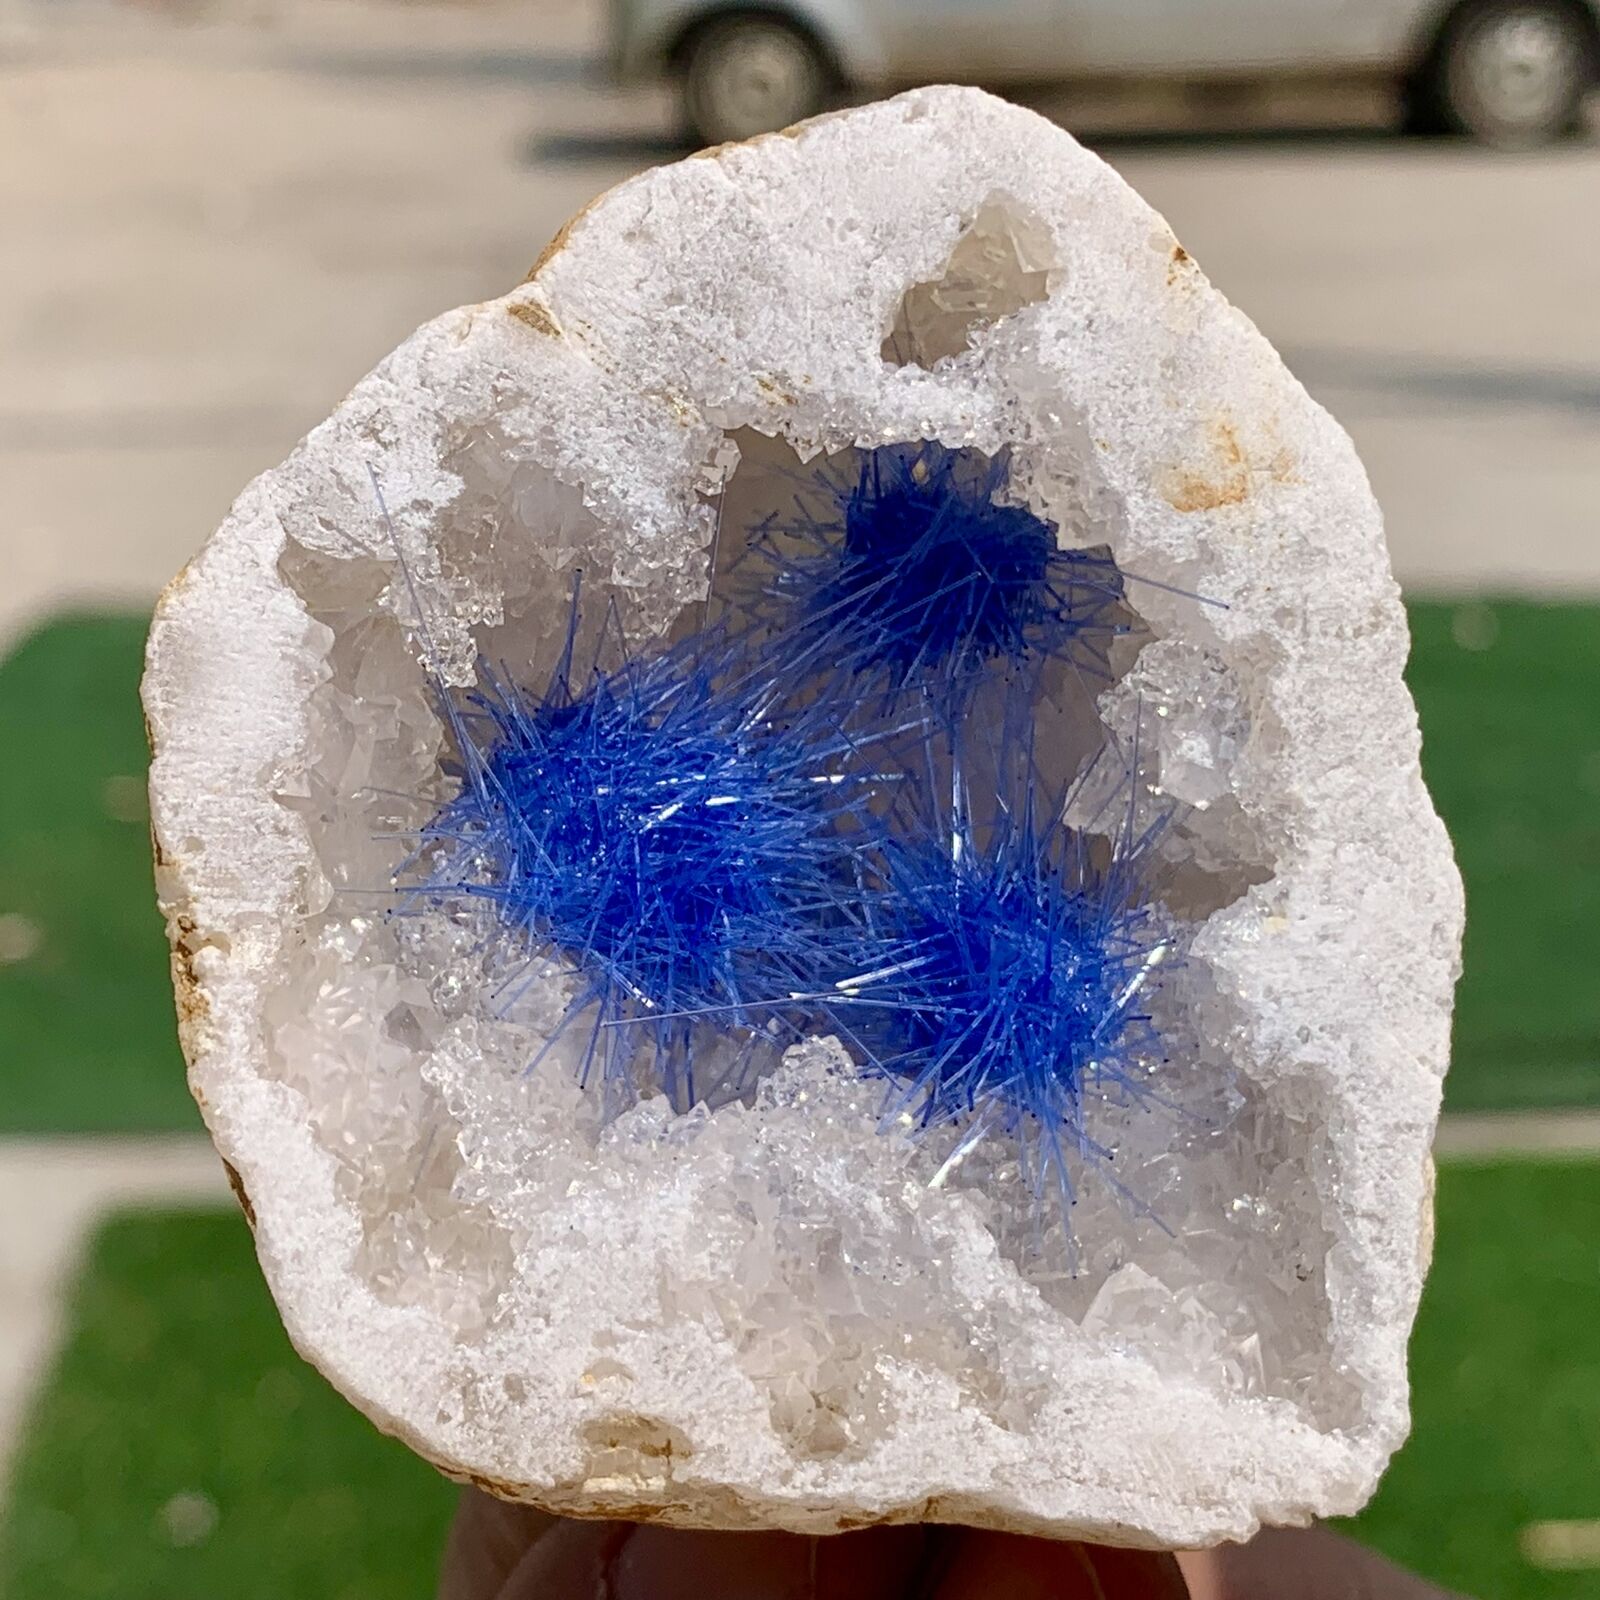 137G Rare Moroccan blue magnesite and quartz crystal coexisting specimen